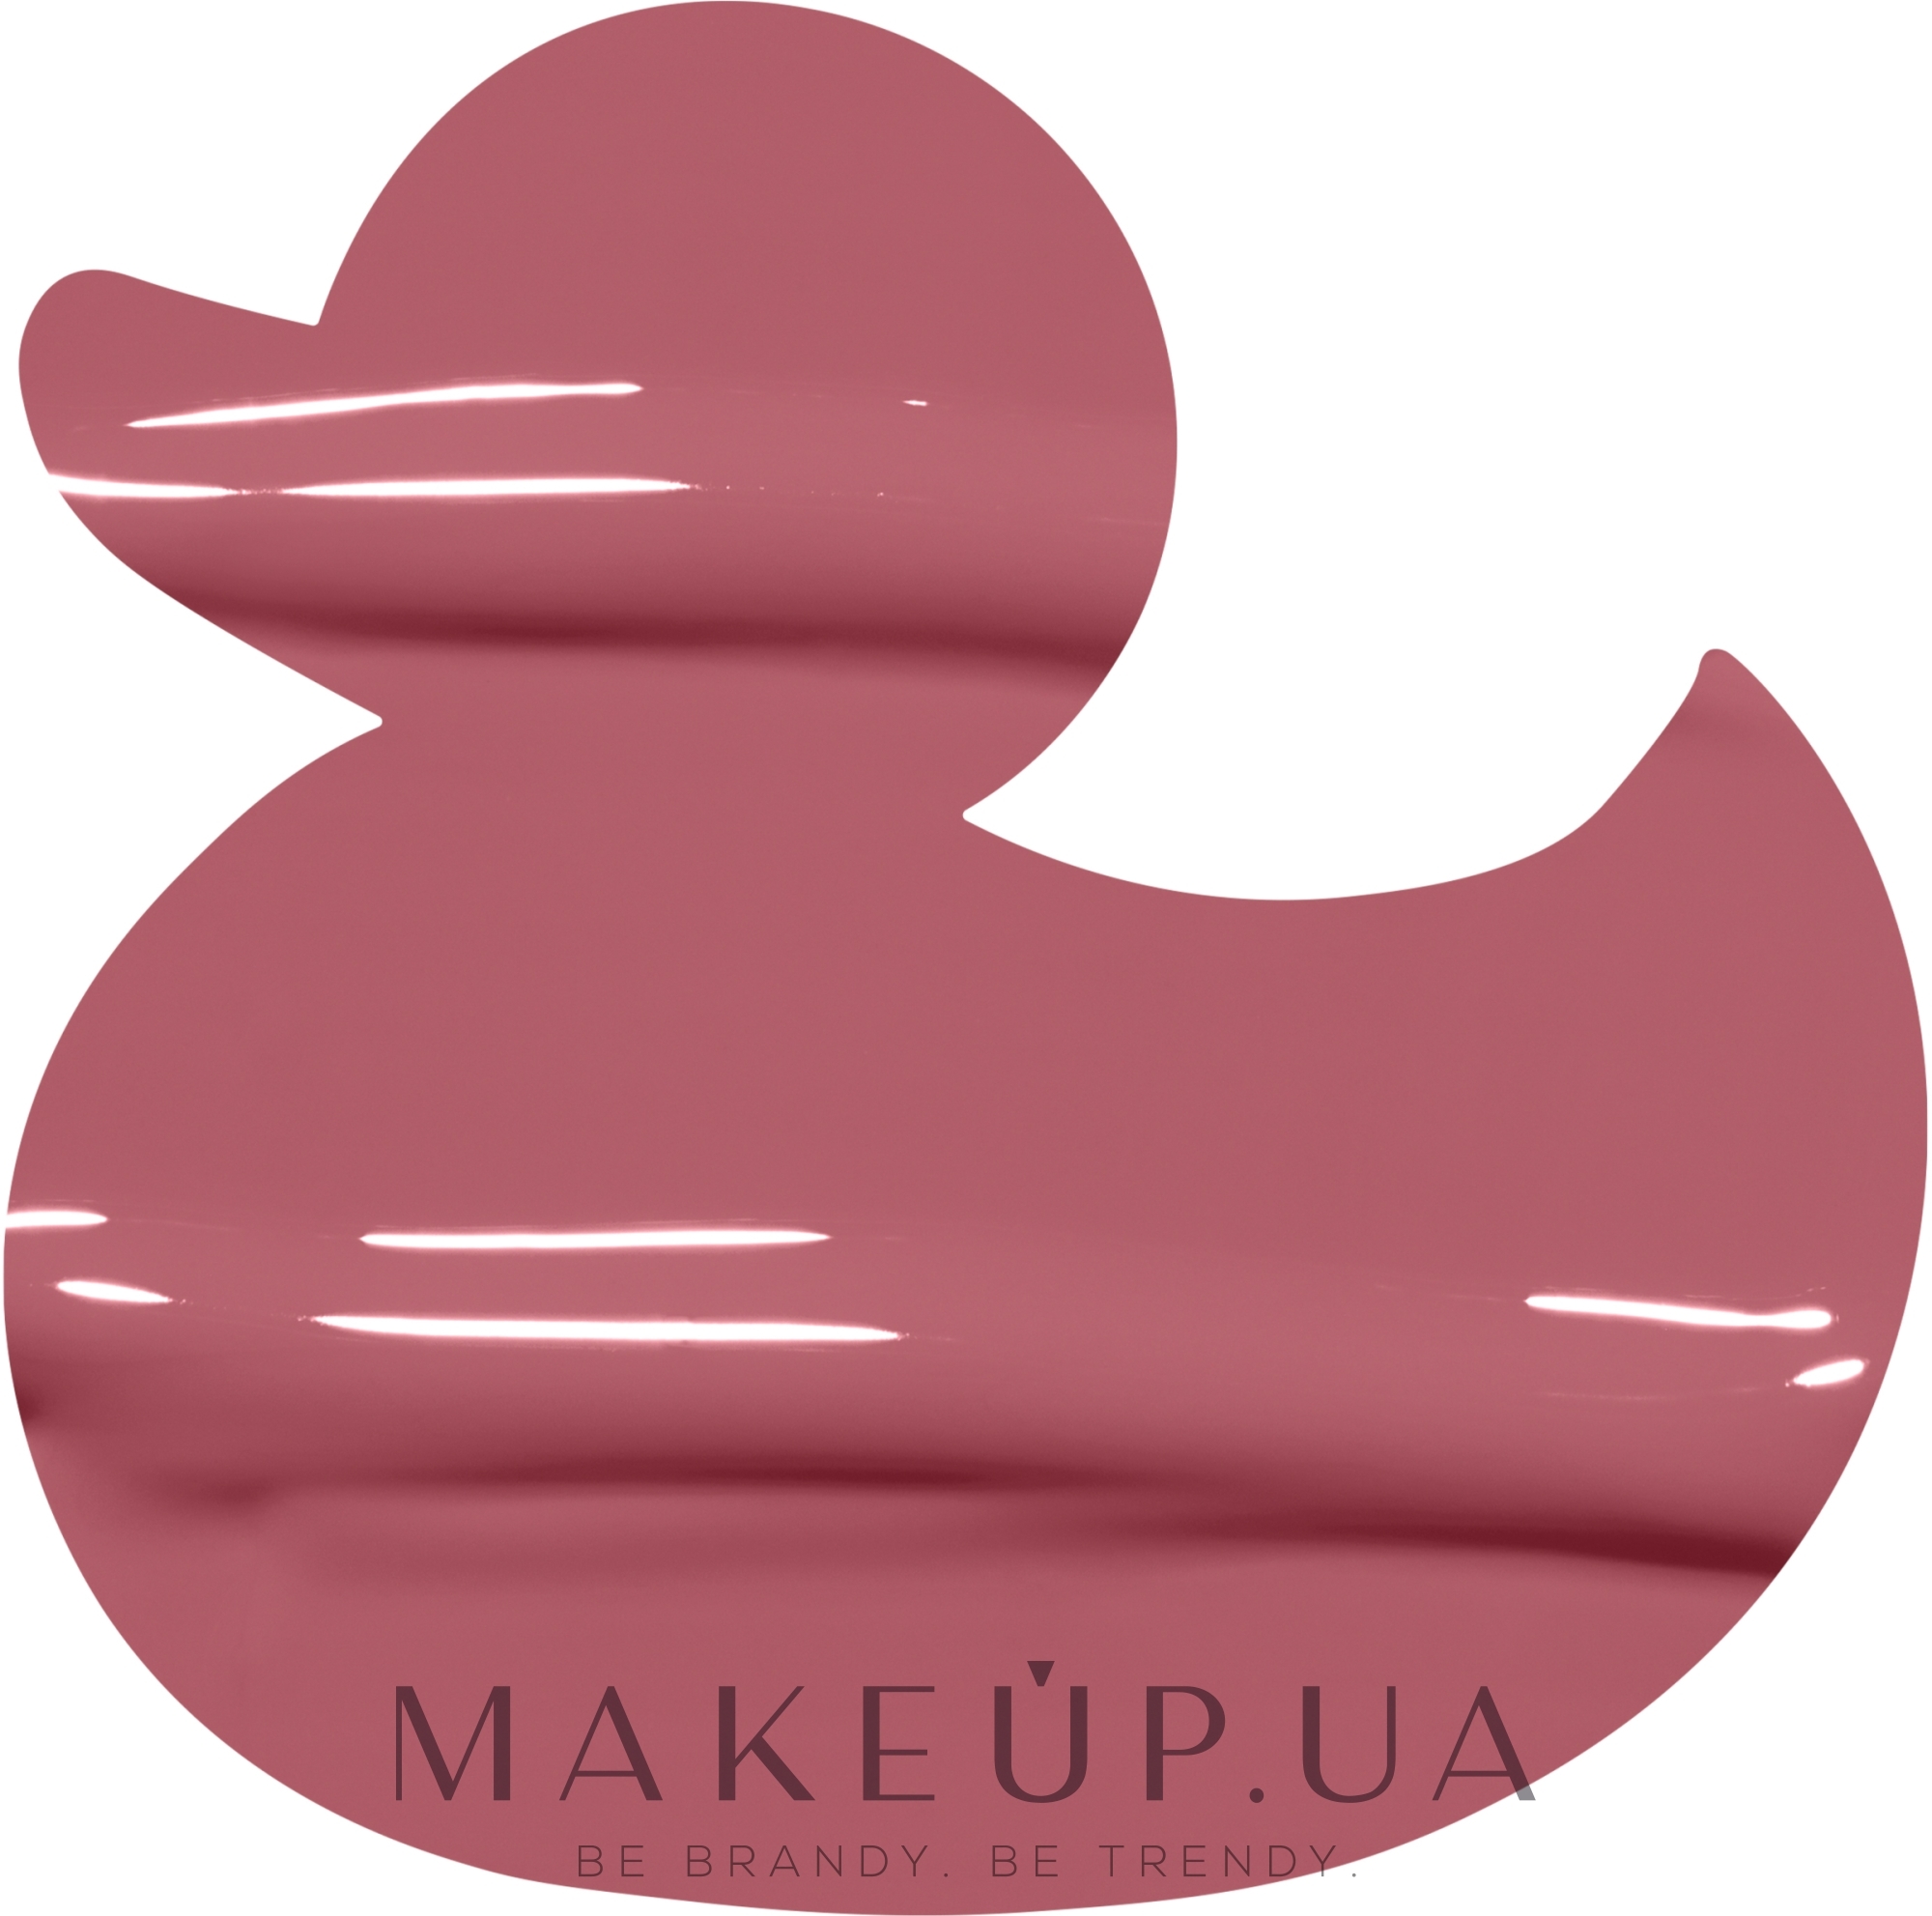 Высокопигментированный блеск-плампер для губ - NYX Professional Makeup Duck Plump